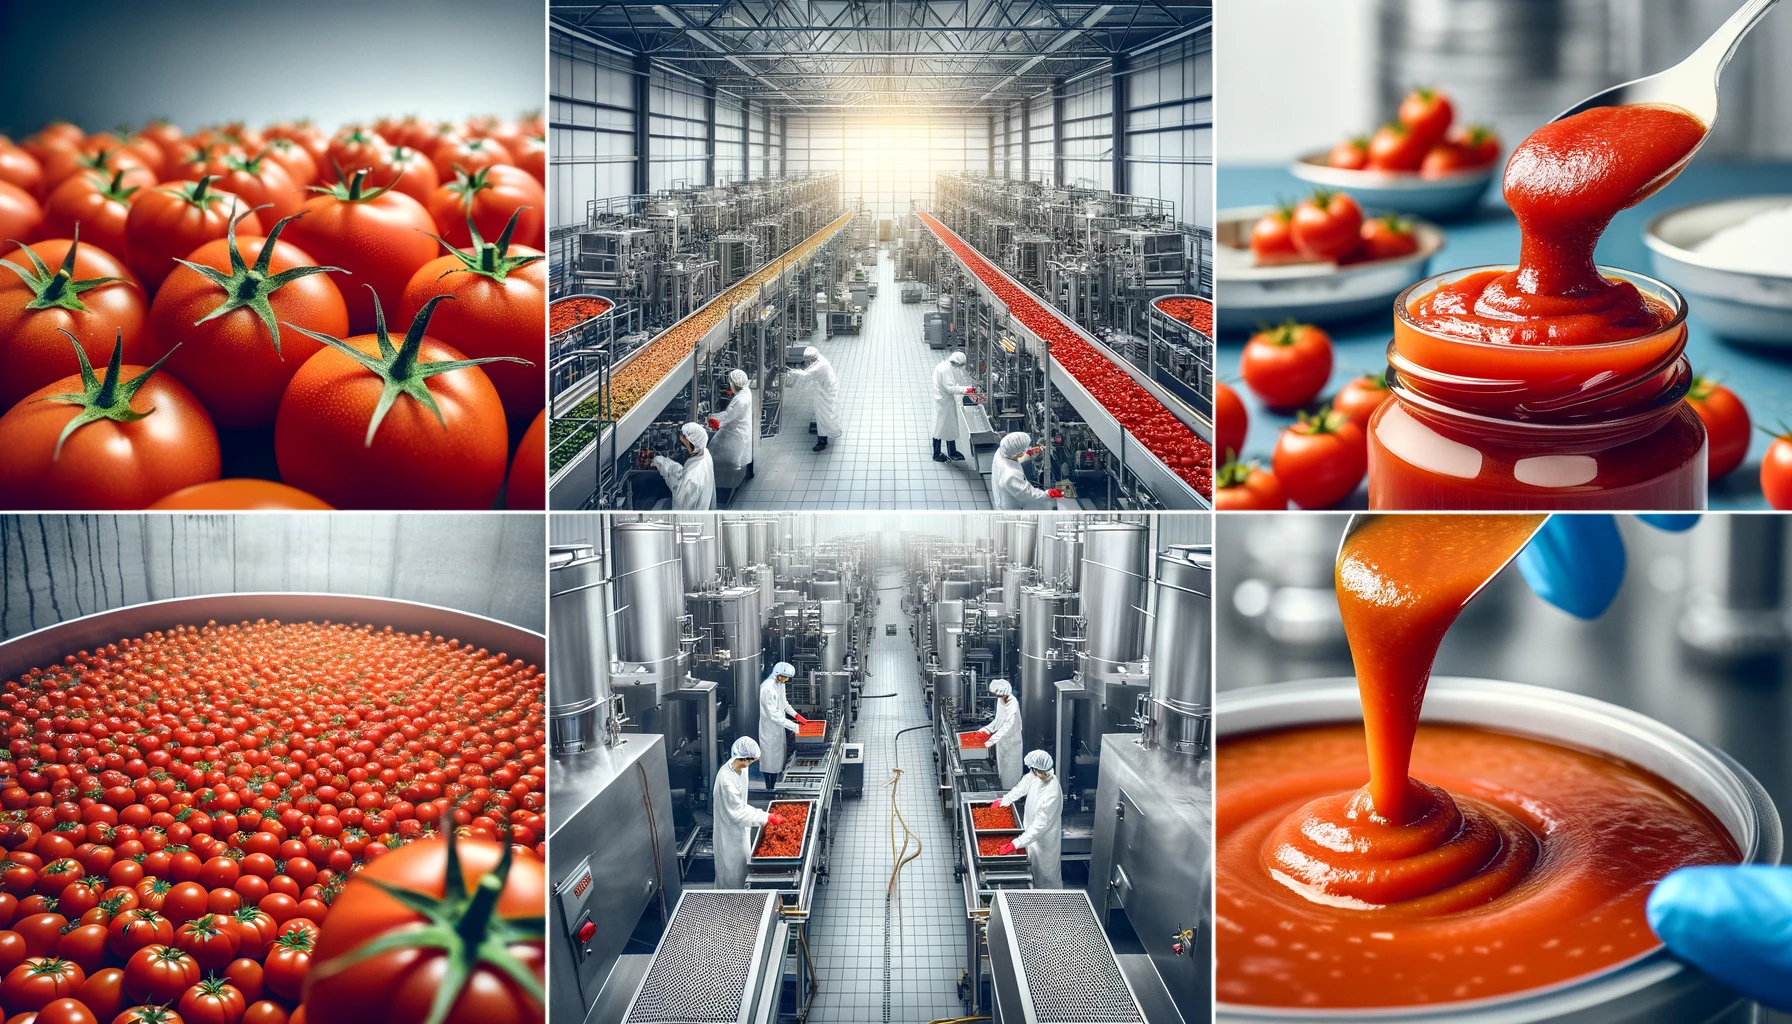 Tomato paste factory